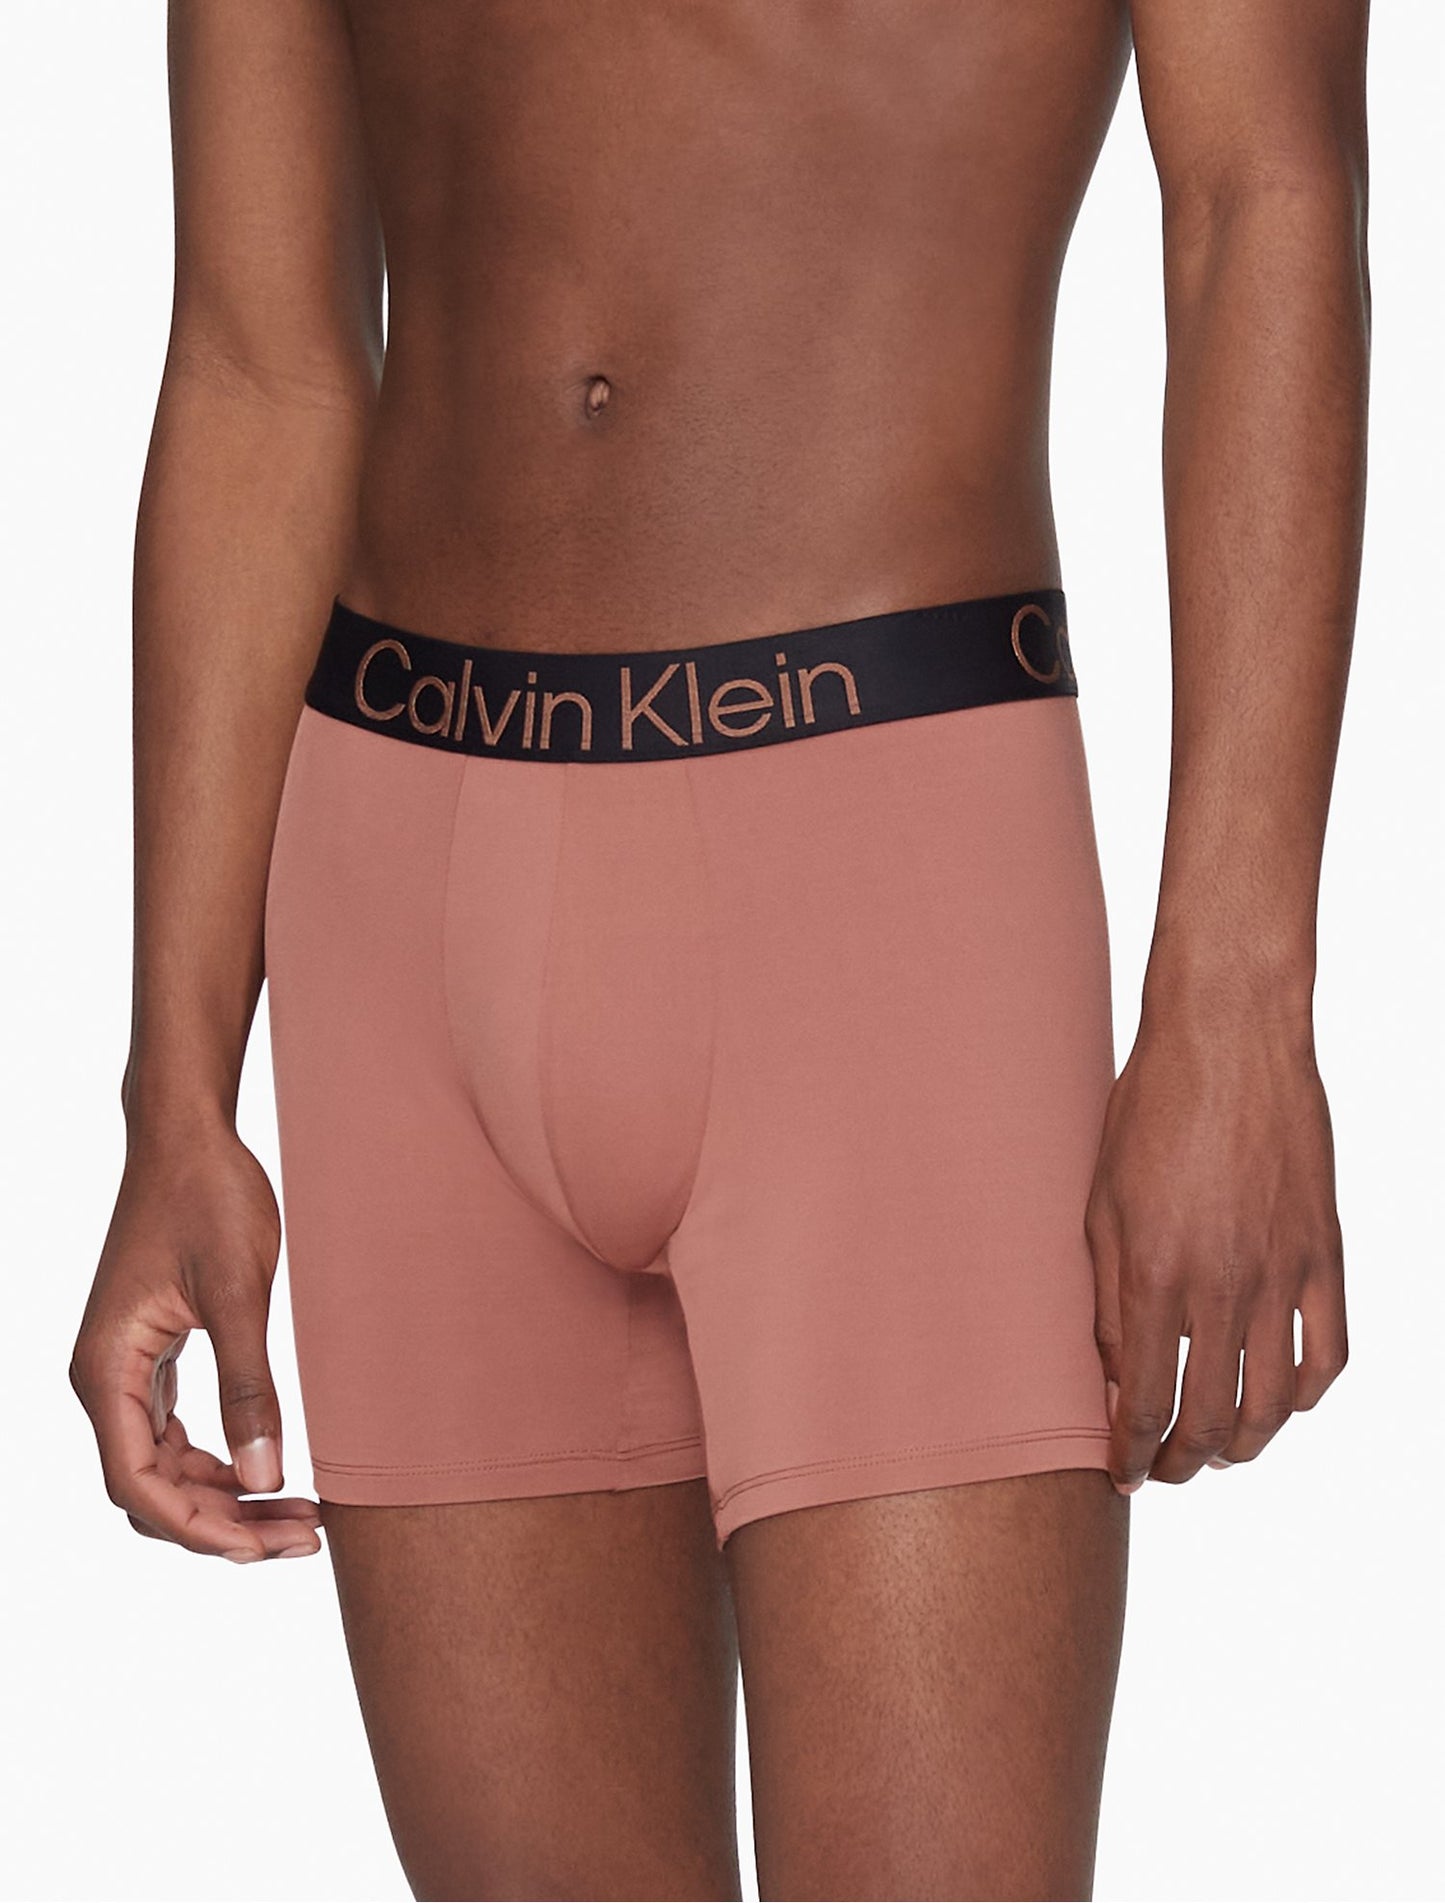 Calvin Klein Dark Brown underwear